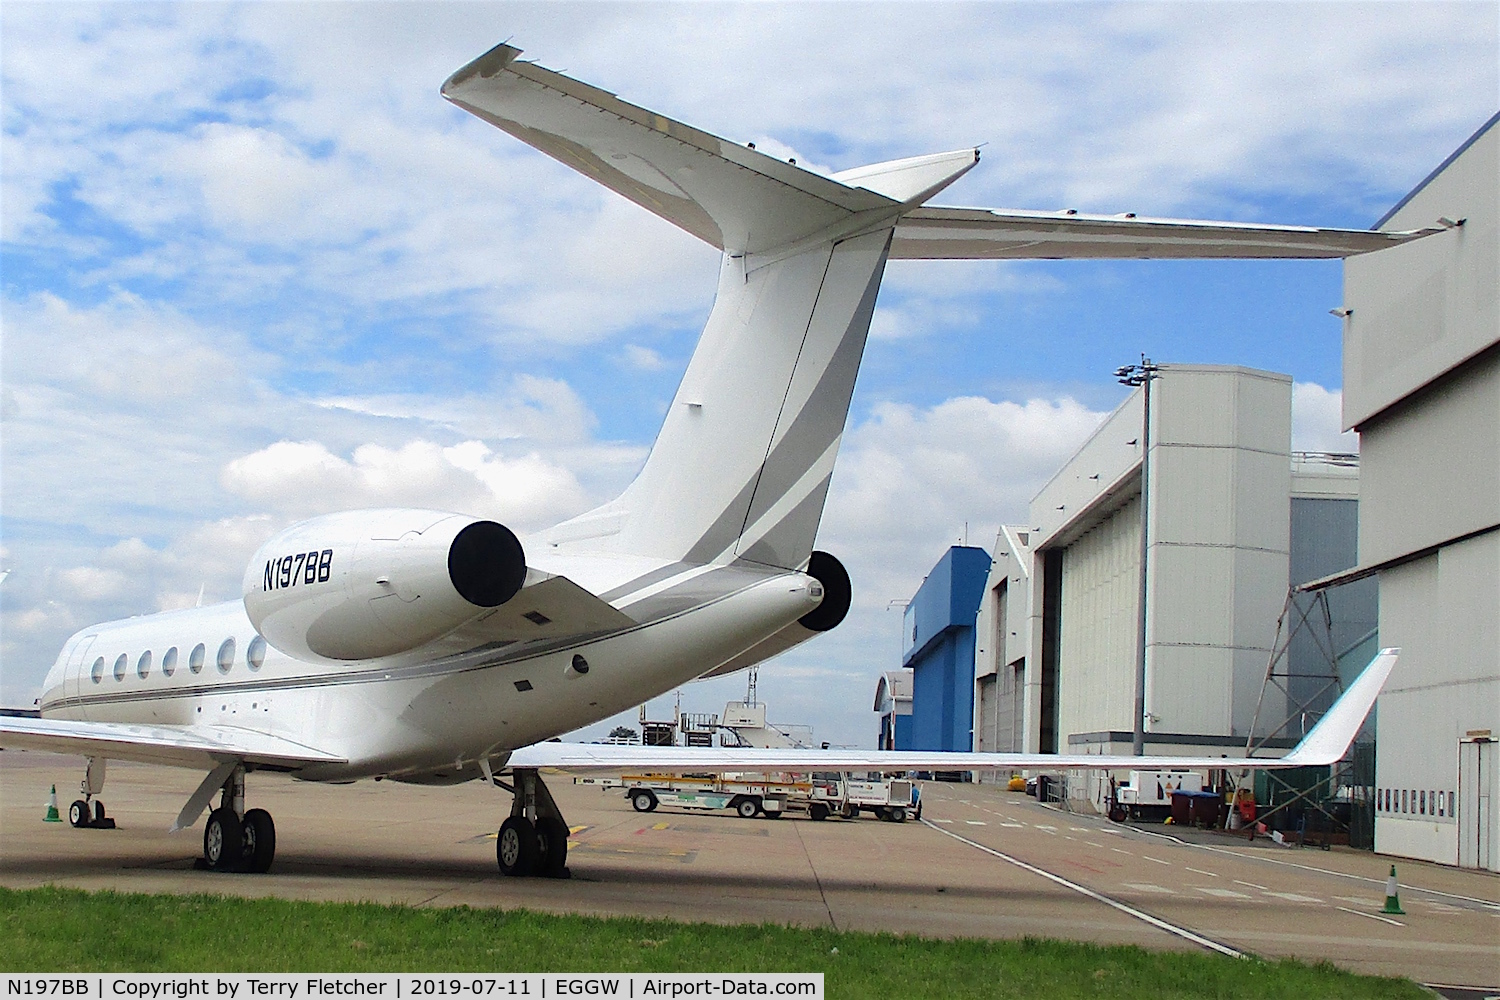 N197BB, 2014 Gulfstream Aerospace G550 C/N 5519, At Luton